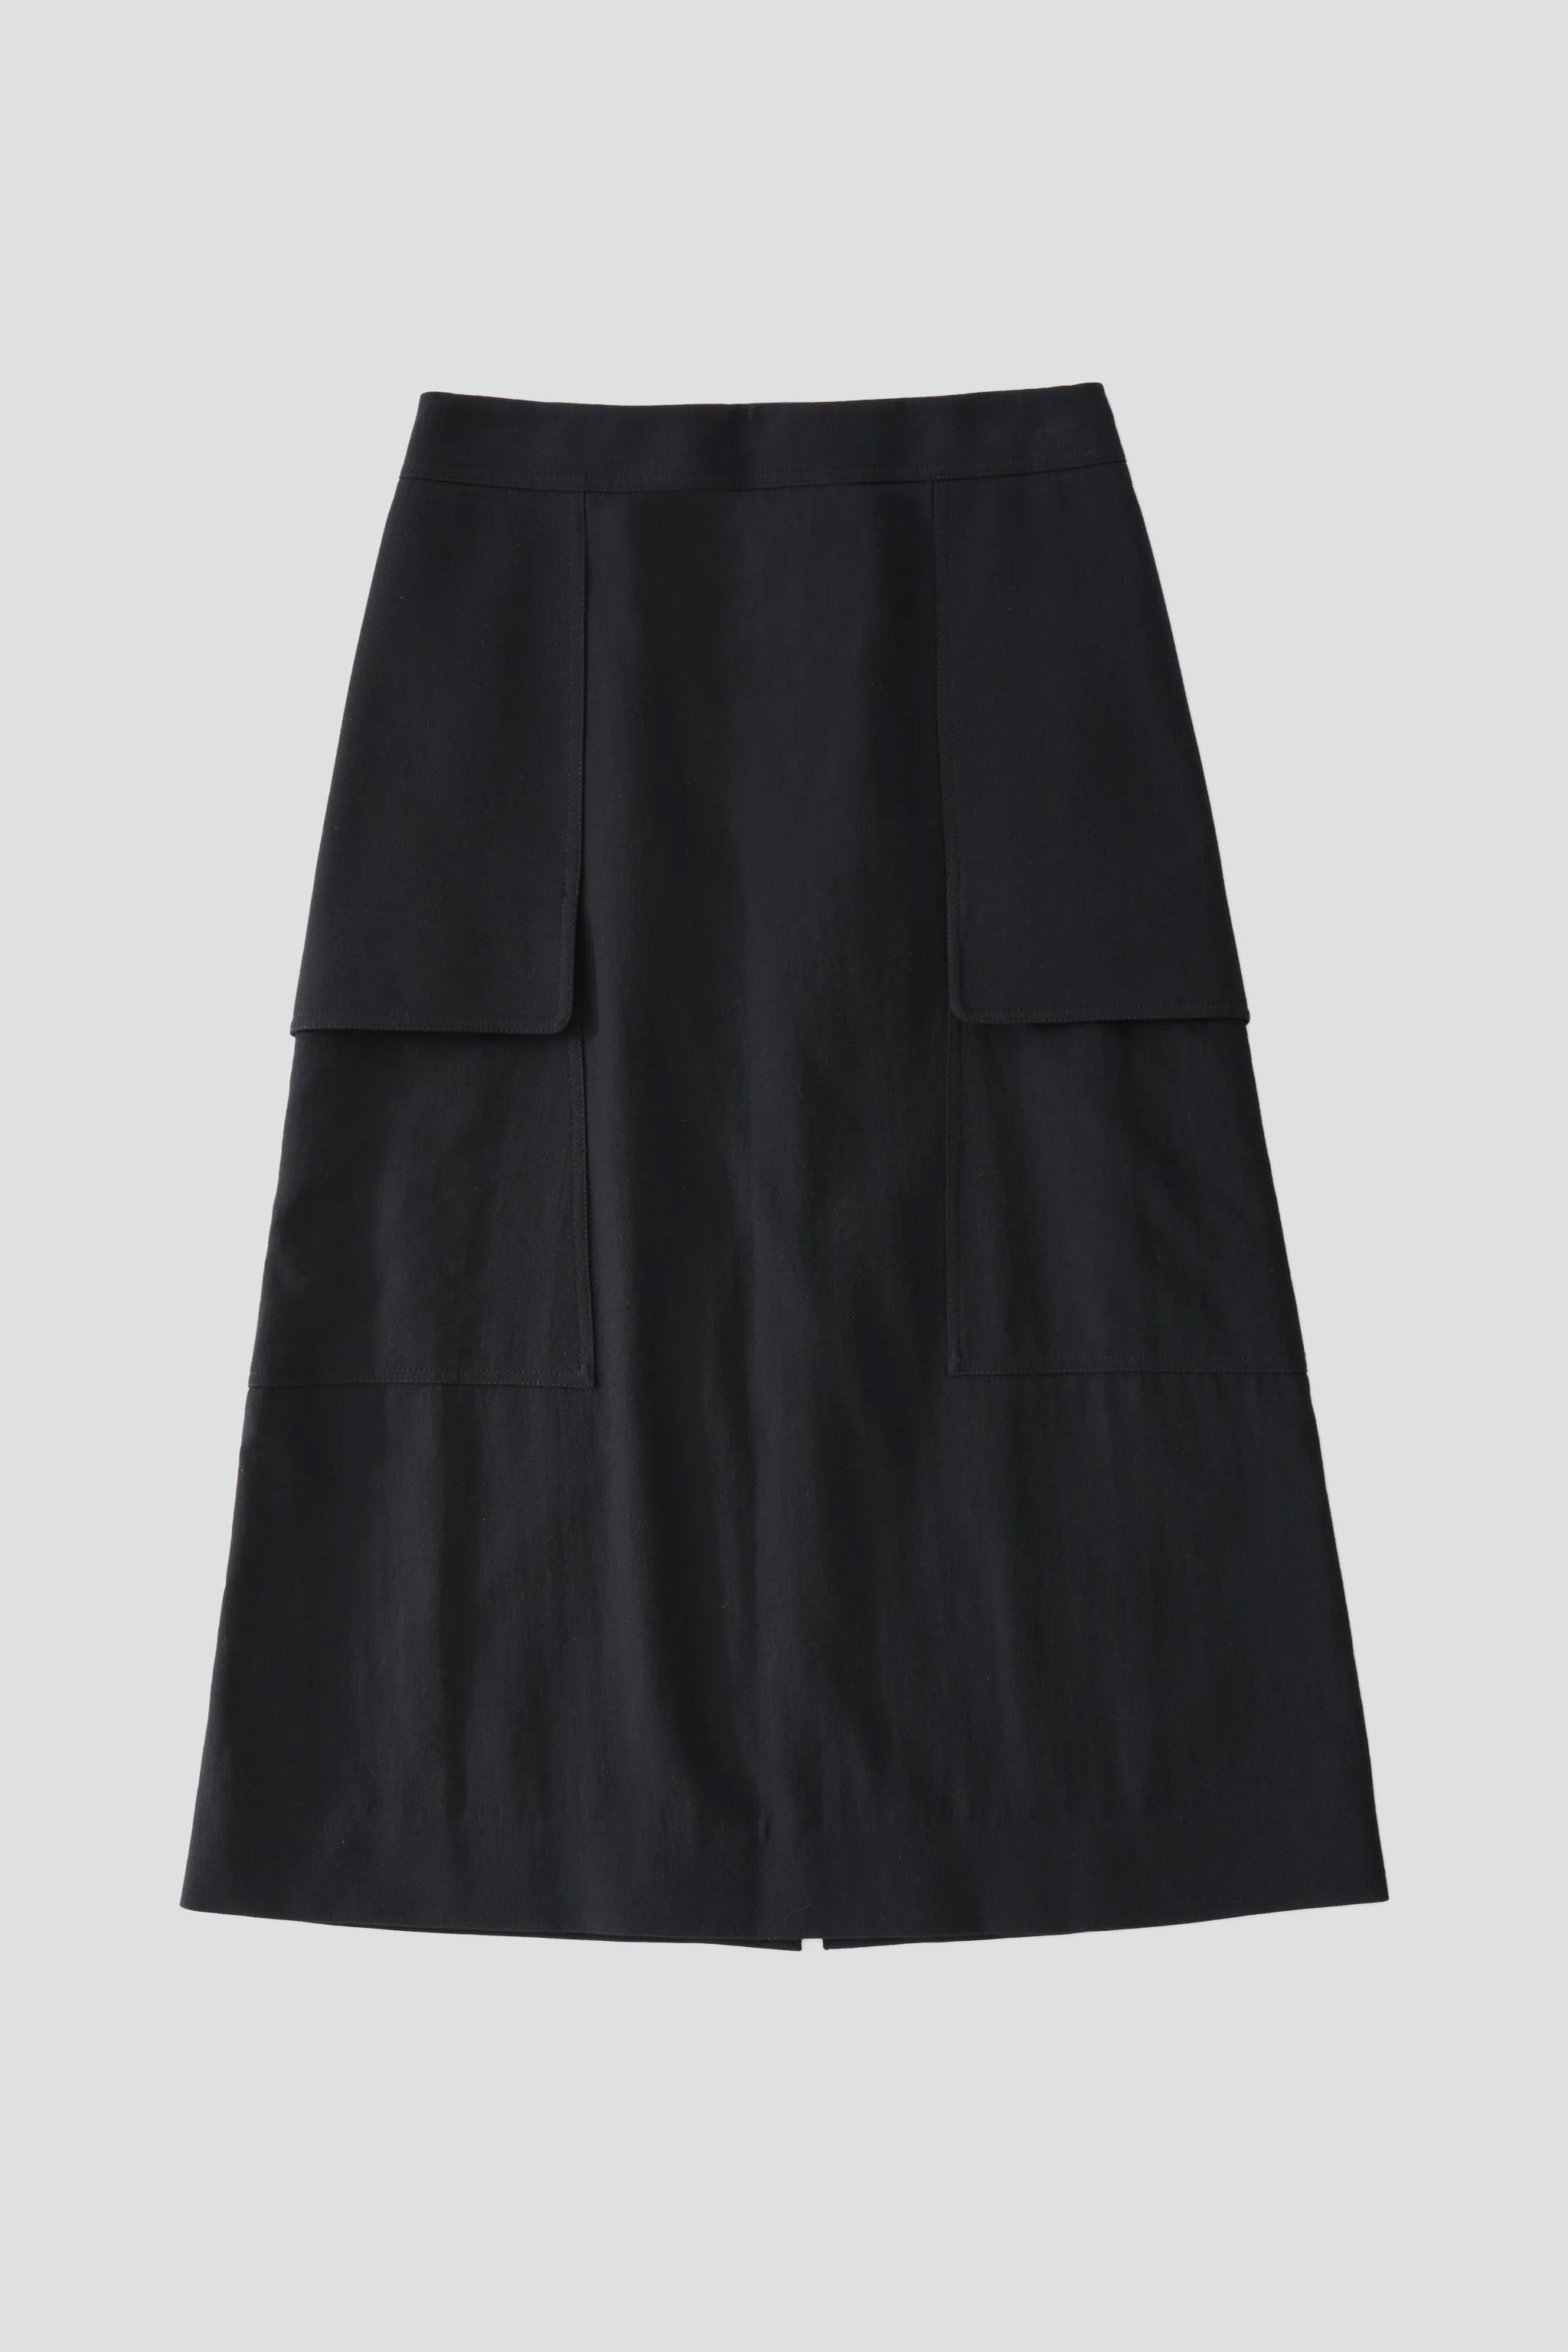 Black Tyrell Skirt